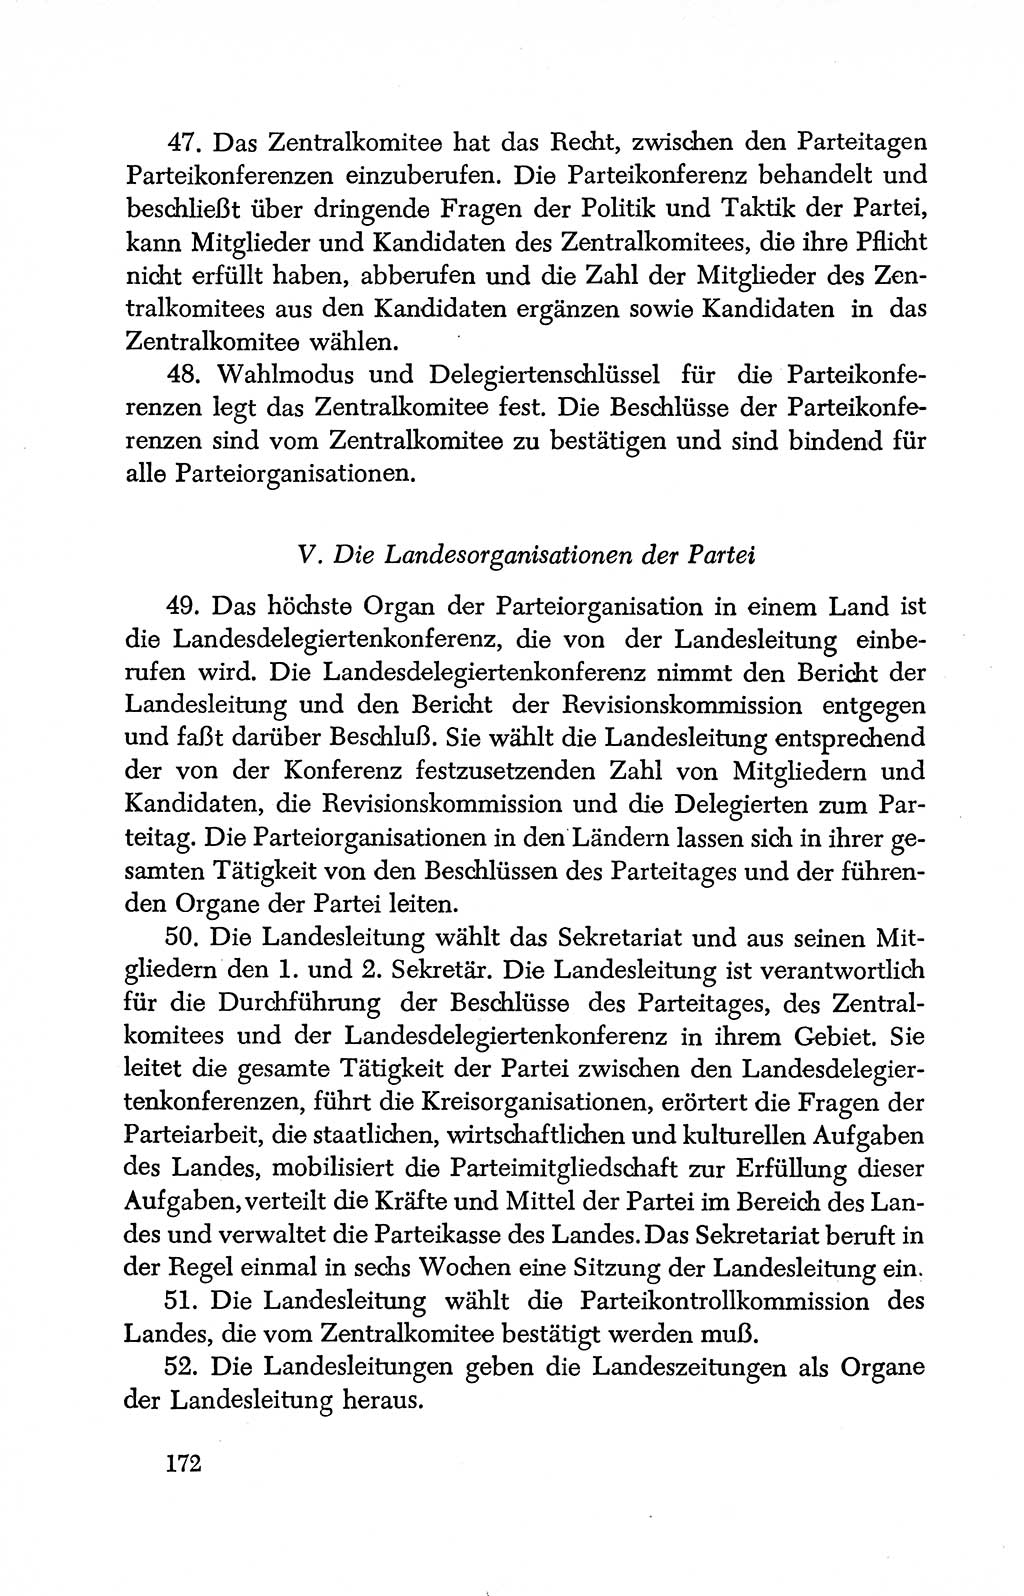 Dokumente der Sozialistischen Einheitspartei Deutschlands (SED) [Deutsche Demokratische Republik (DDR)] 1950-1952, Seite 172 (Dok. SED DDR 1950-1952, S. 172)